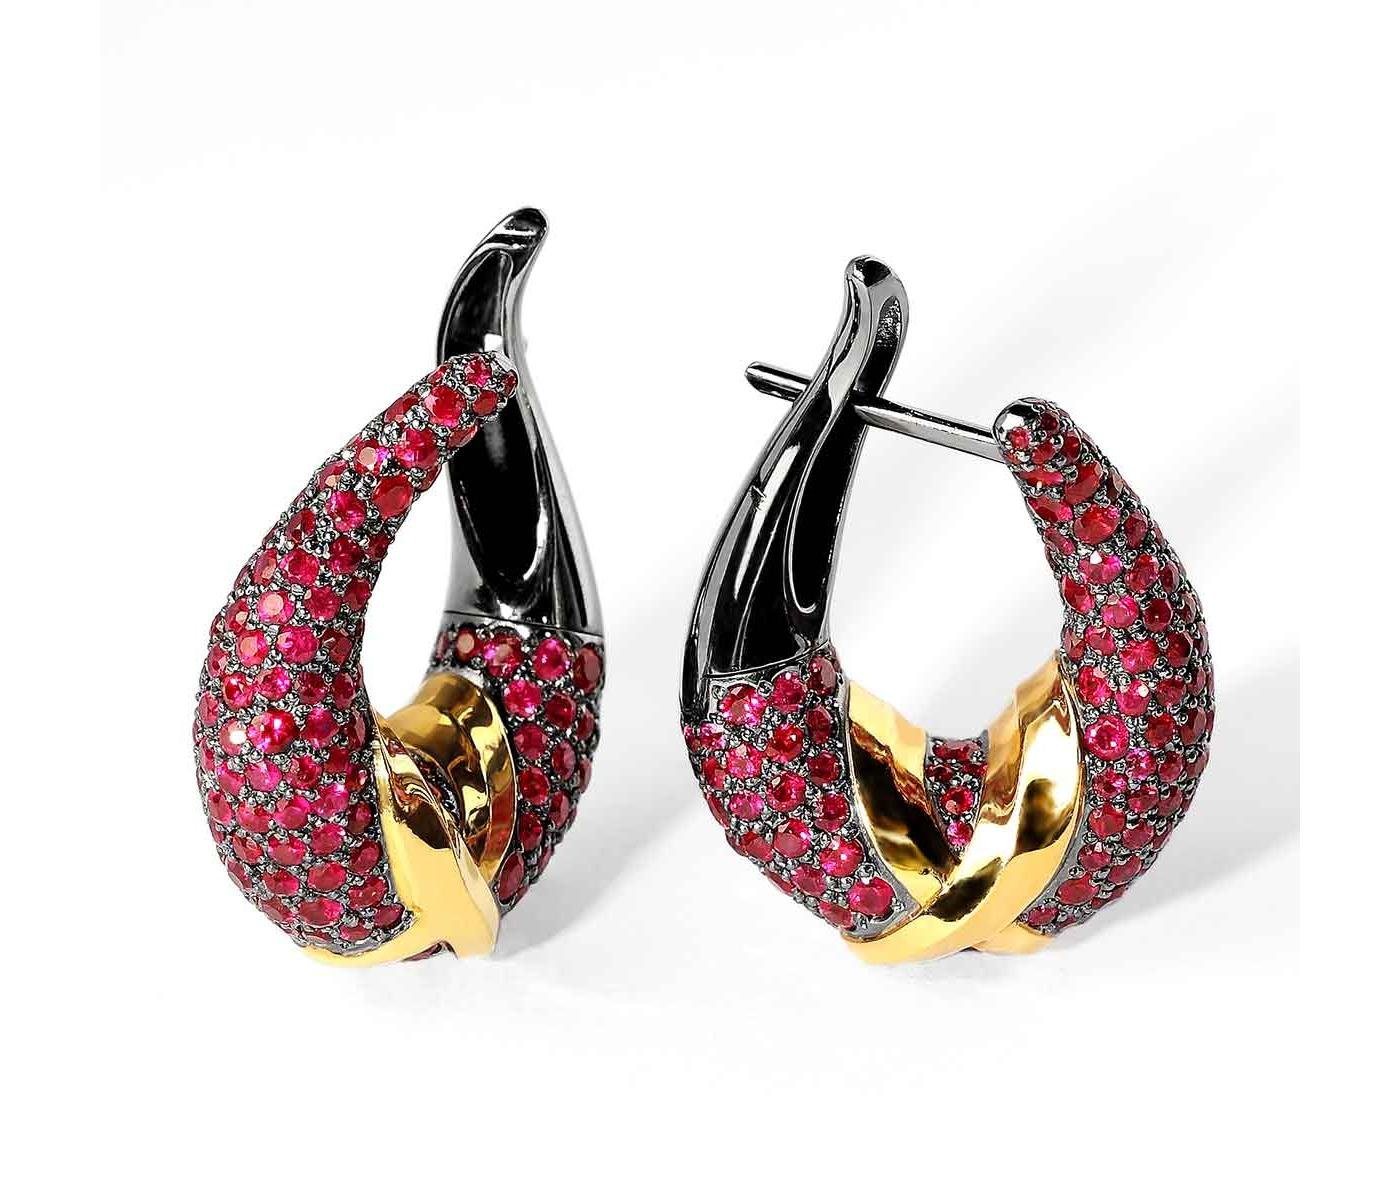 Earrings by Mousson Atelier